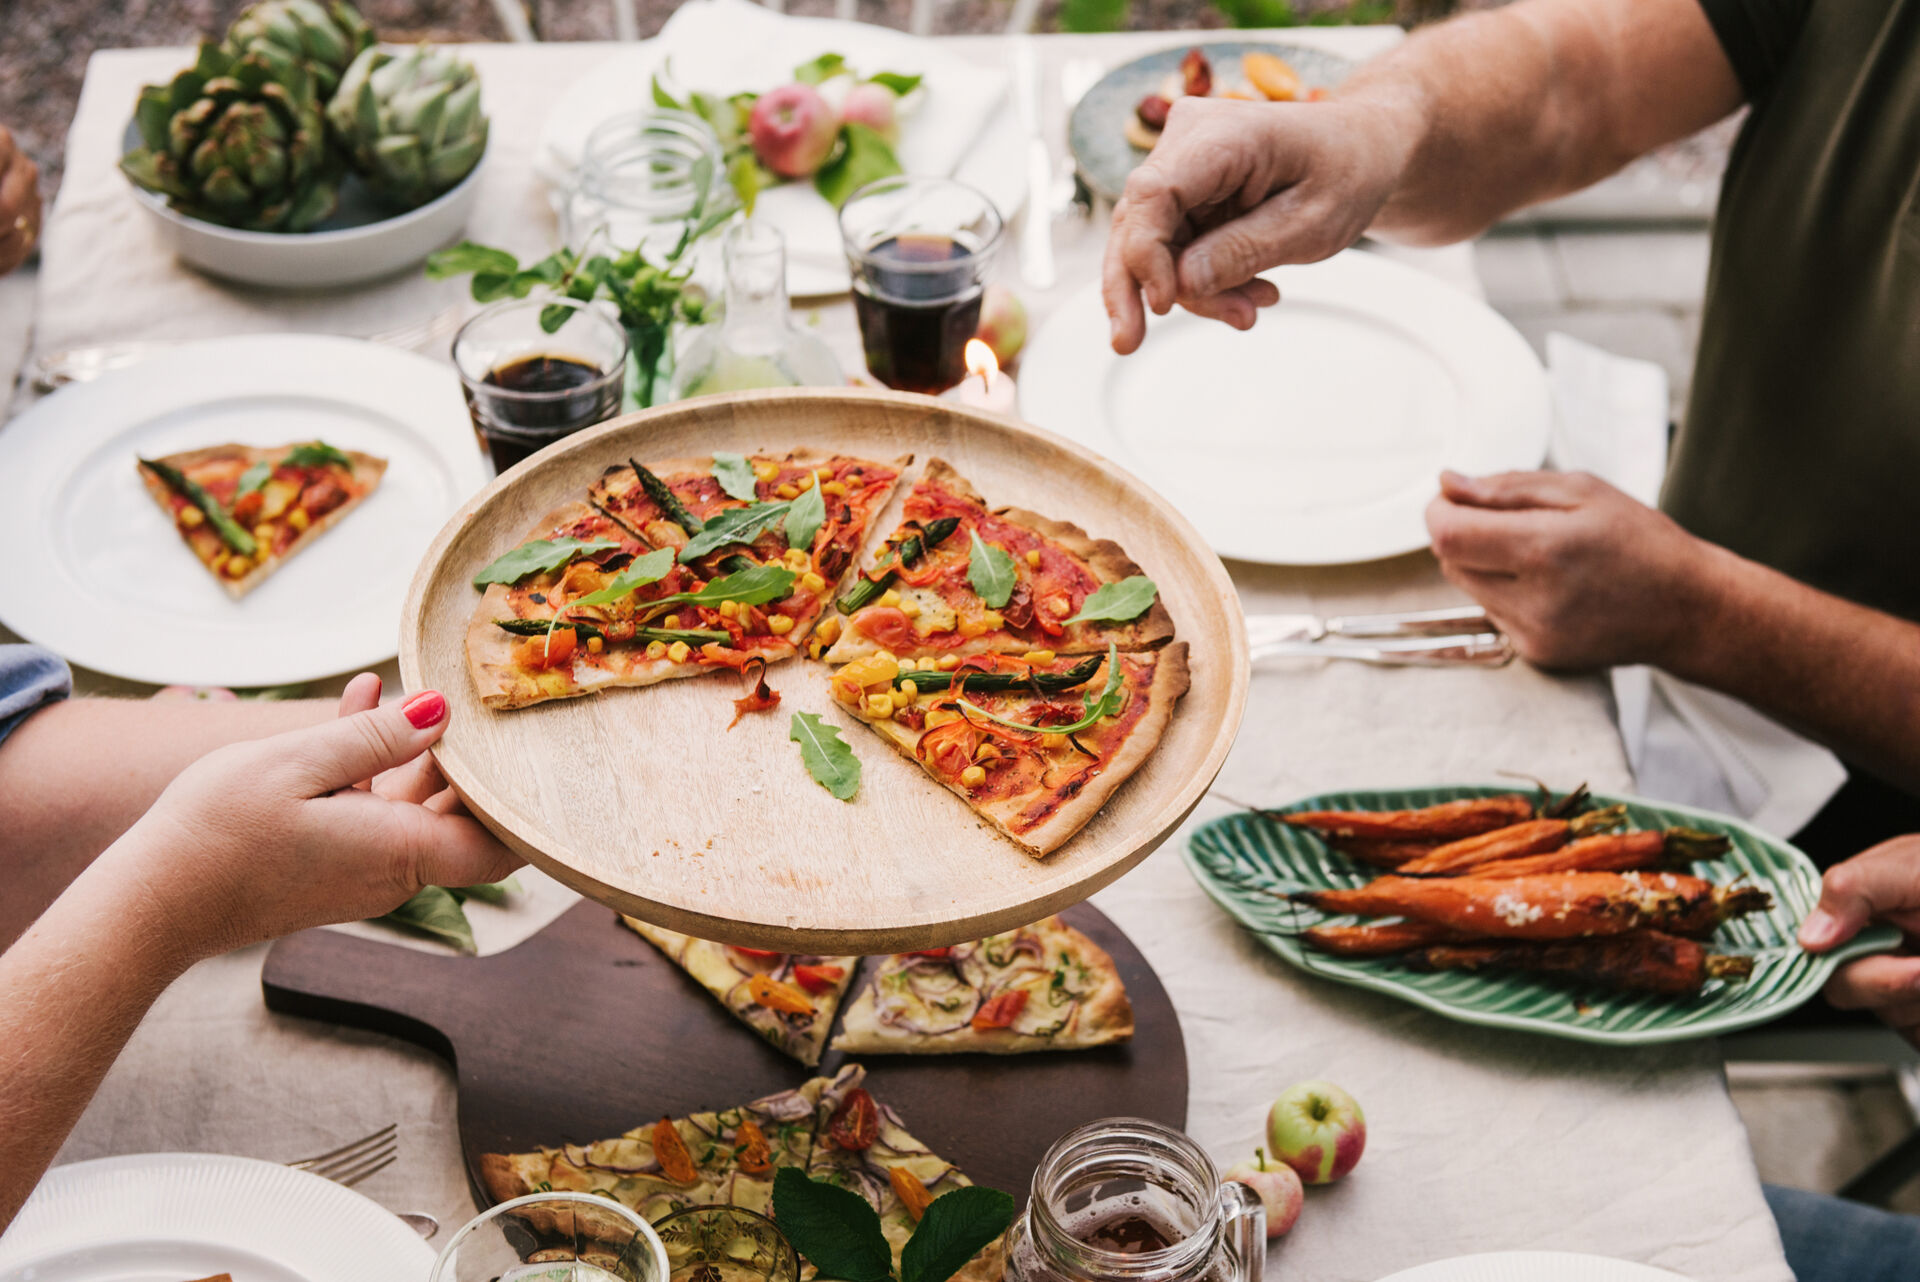 Ein gedeckter Tisch mit selbstgemachter Pizza und anderen Lebensmitteln, an denen sich mehreren Menschen bedienen.